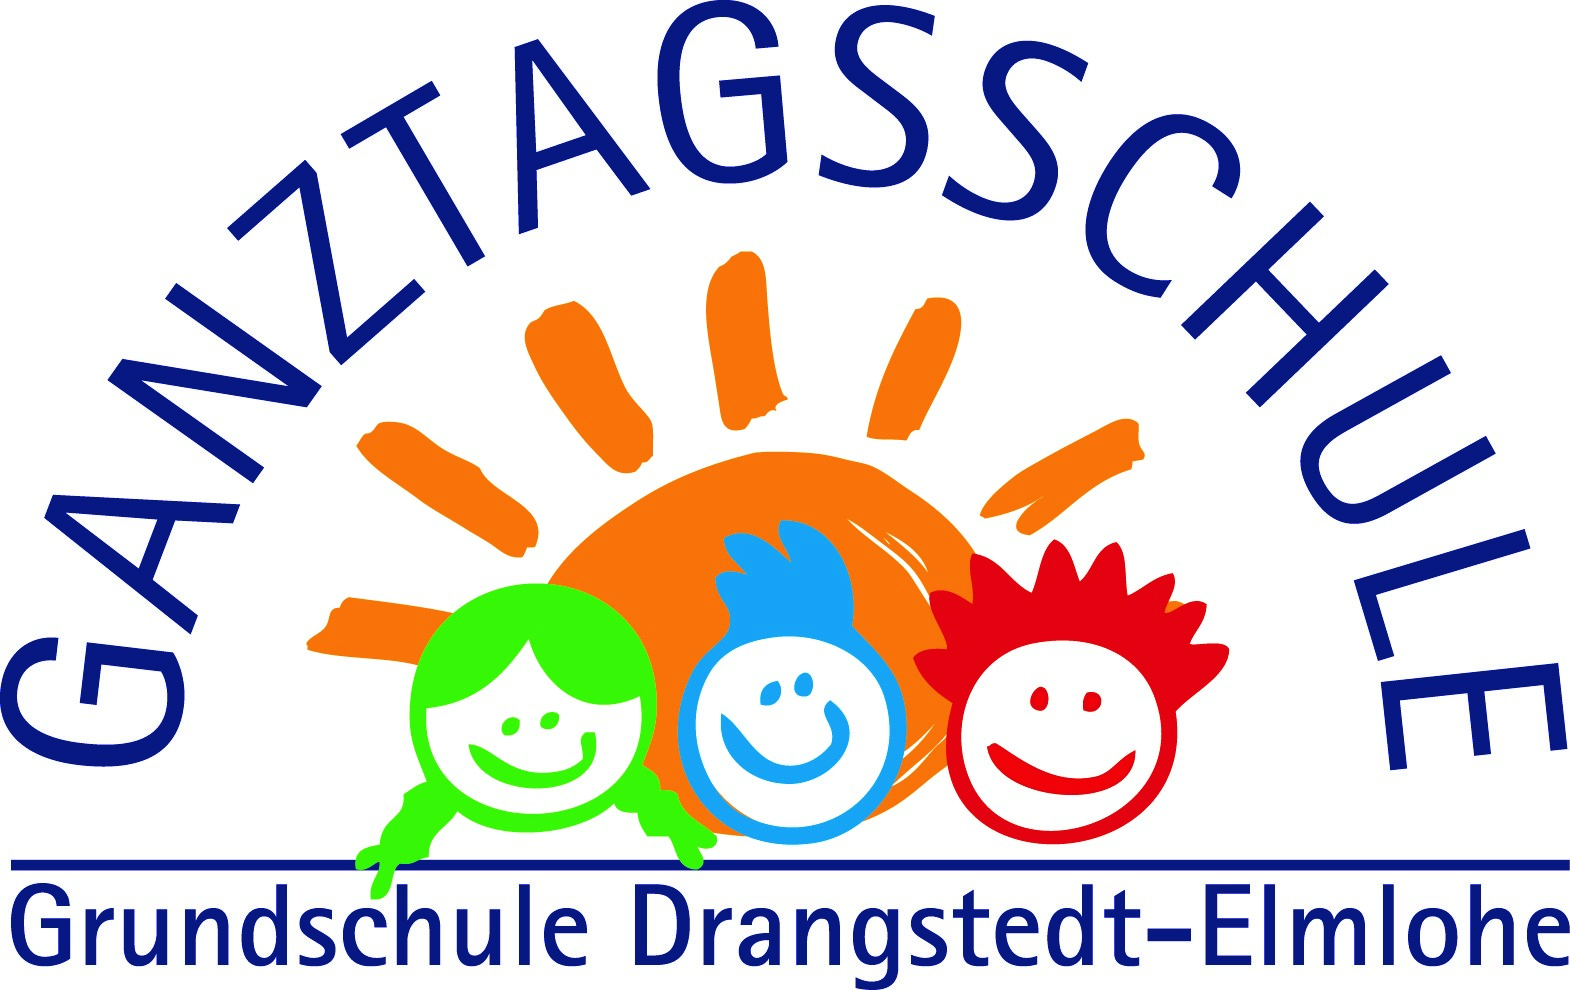 Grundschule Drangstedt-Elmlohe